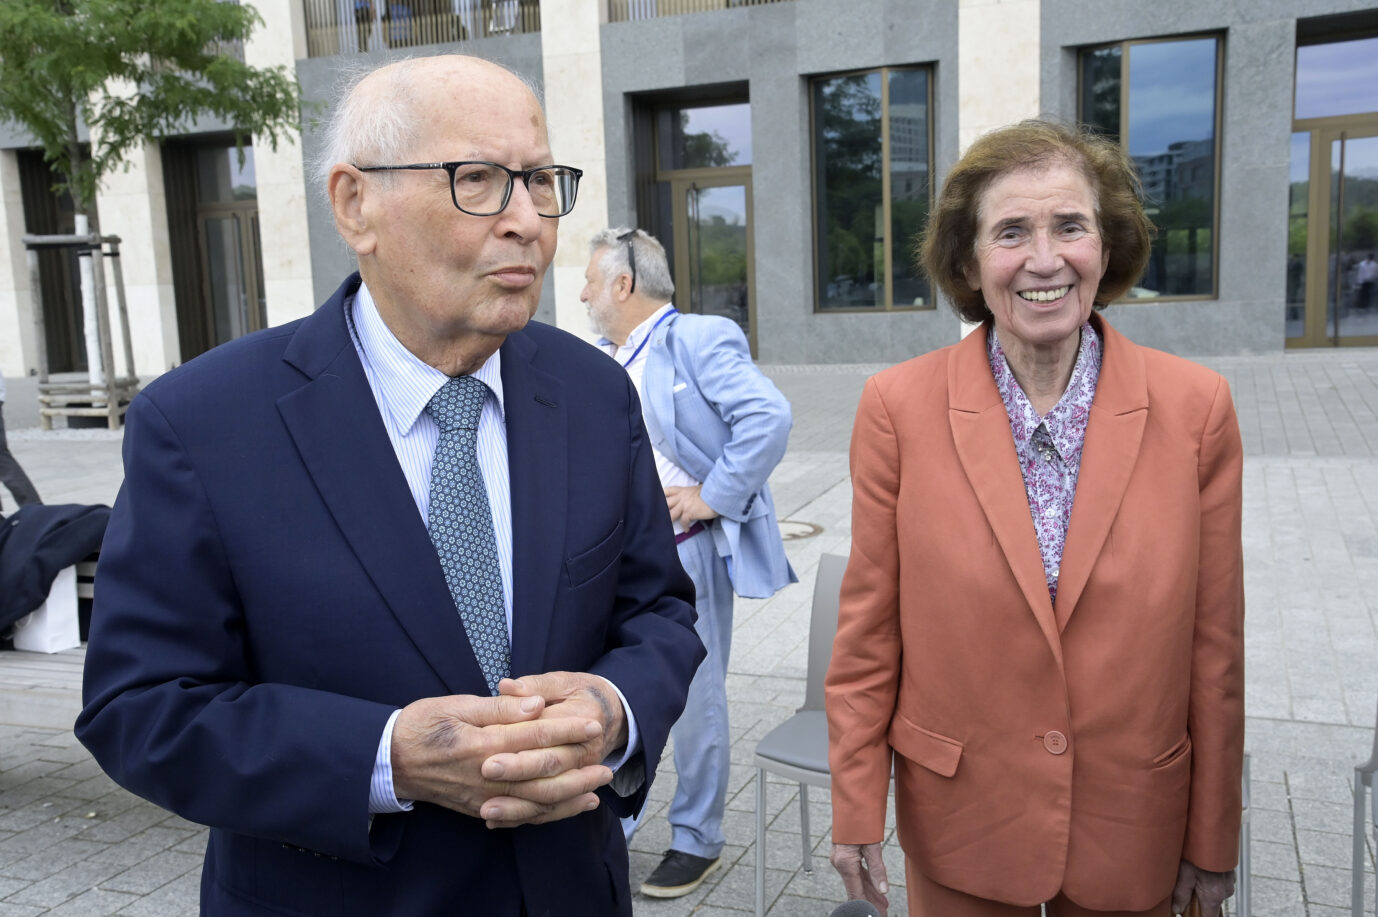 Serge und Beate Klarsfeld am 27. Mai bei einer Holocaust-Gedenkveranstaltung in Berlin.